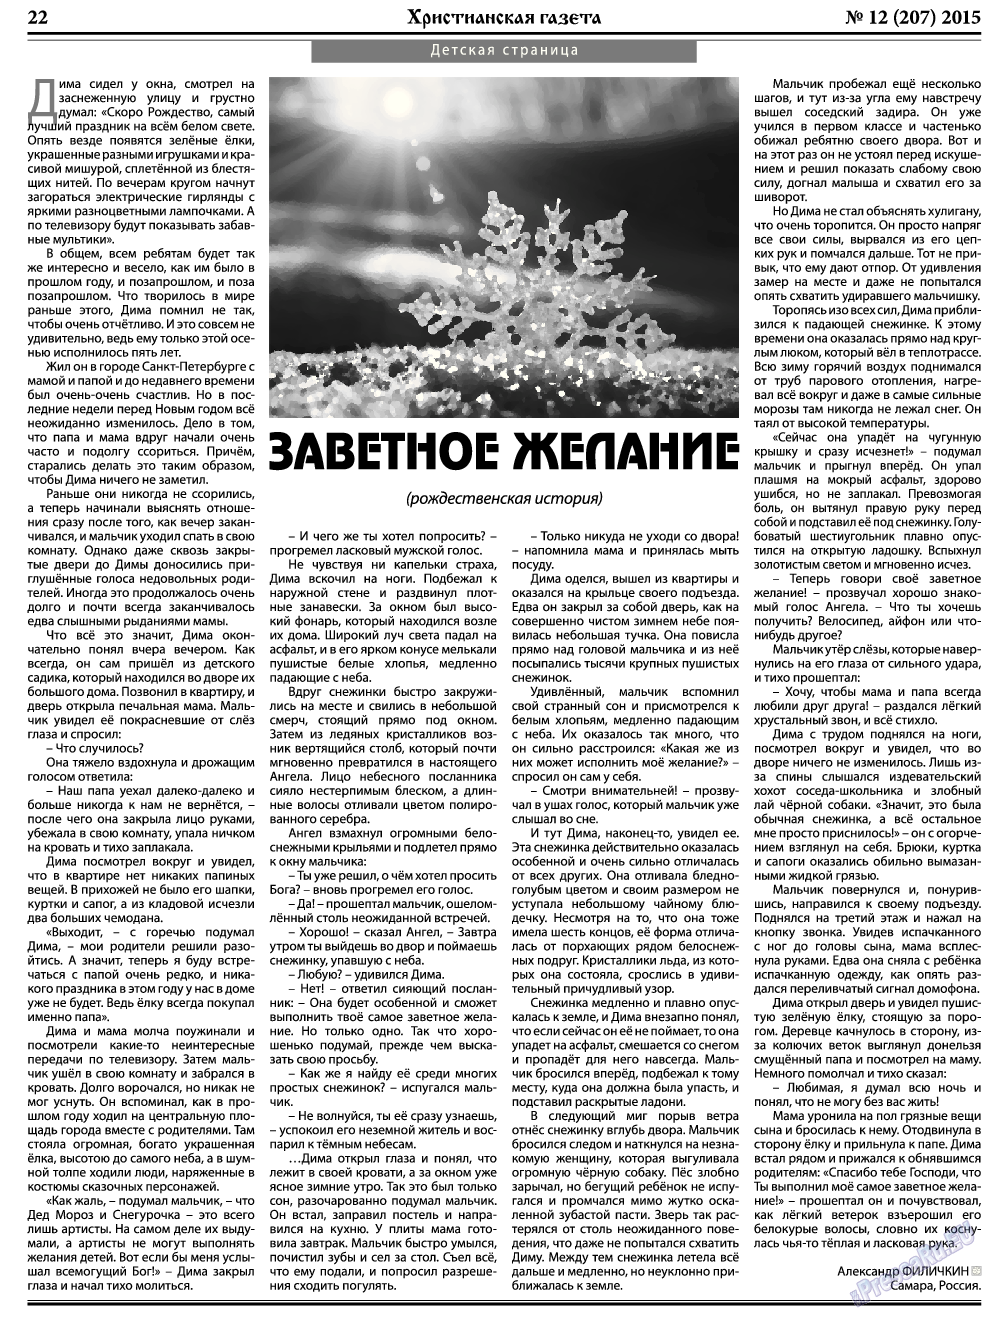 Христианская газета, газета. 2015 №12 стр.30